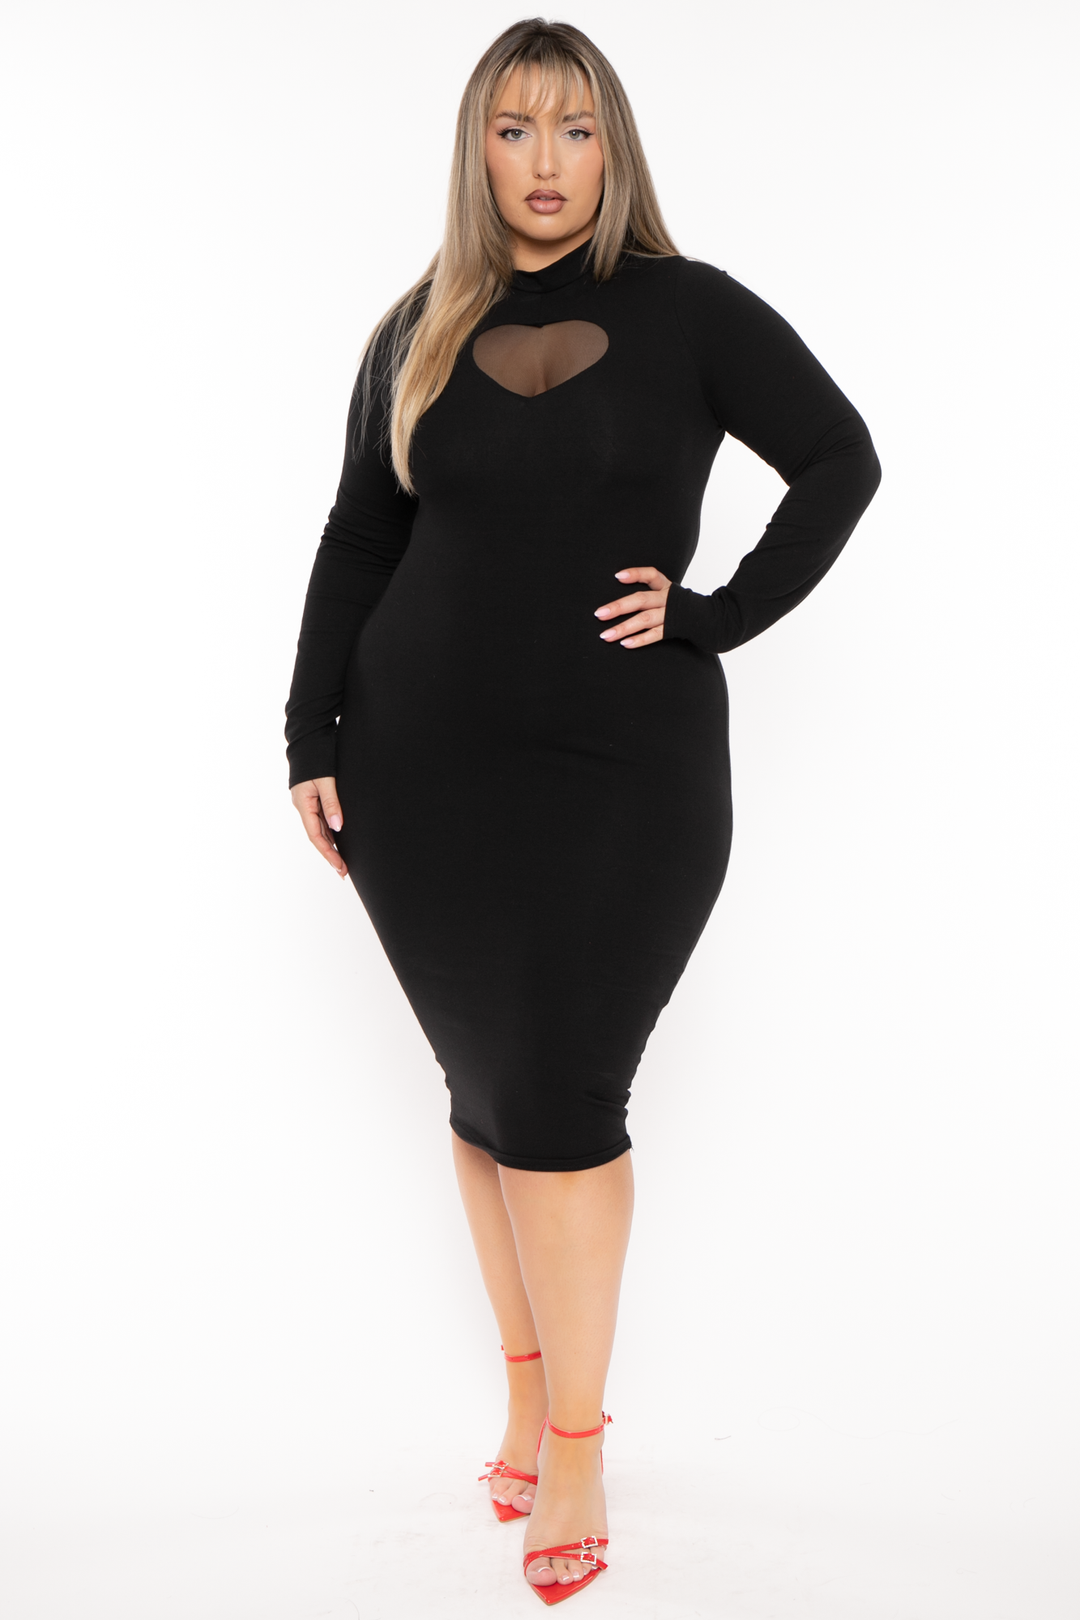 Women's Plus Size Little Black Dresses - Curvy Sense